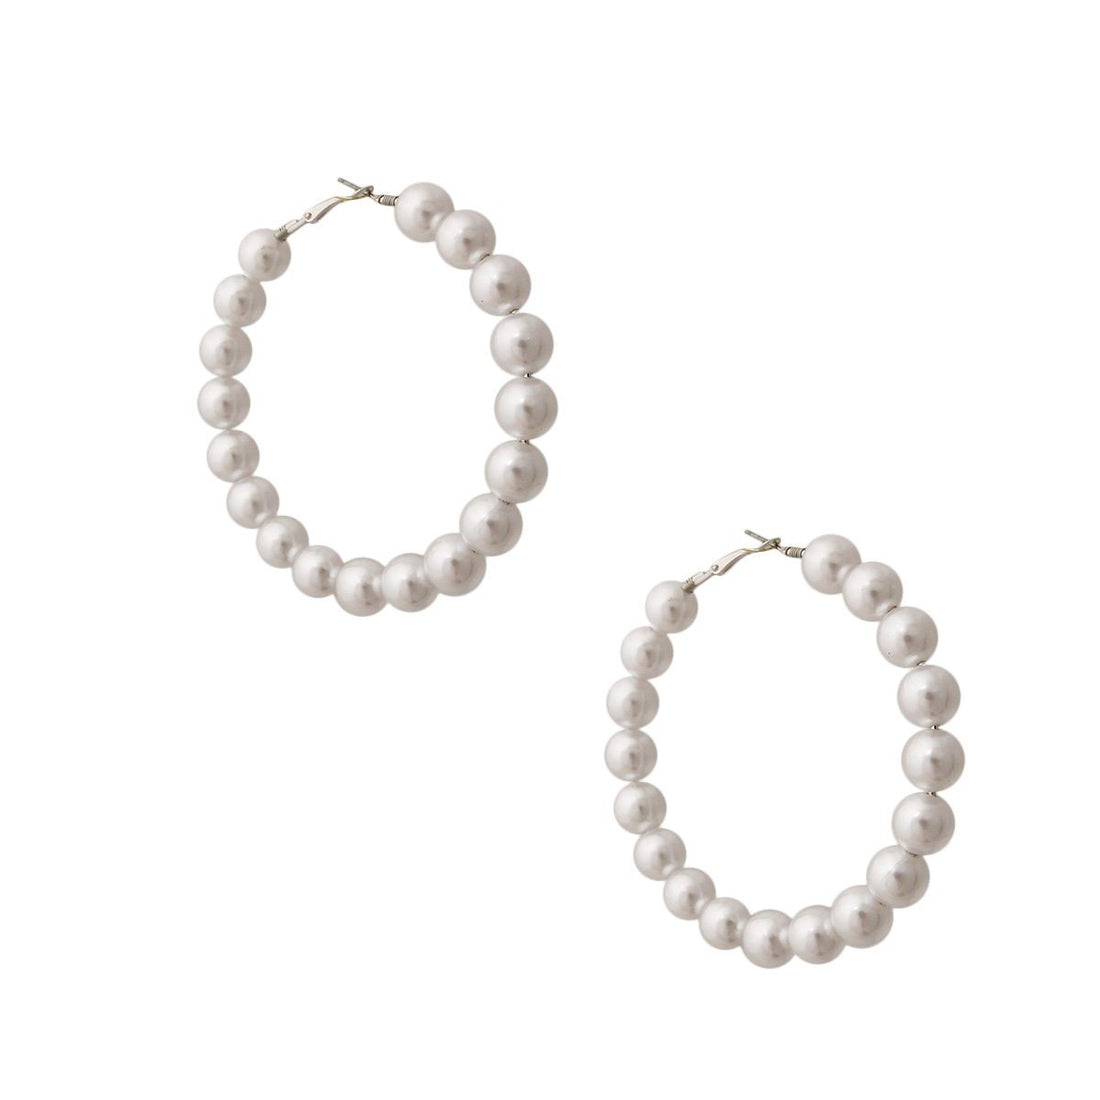 White Pearl Hoop Earrings